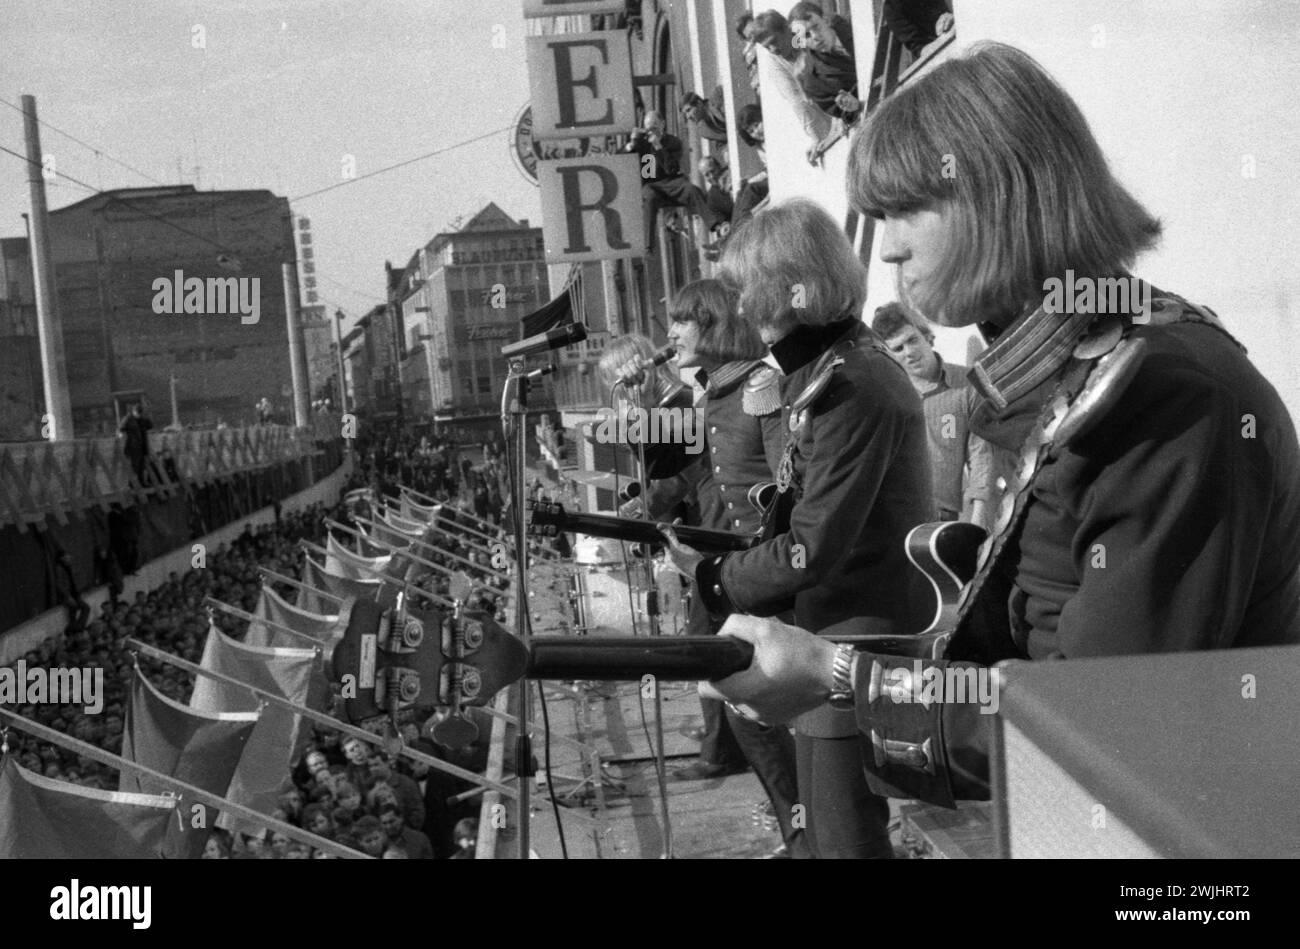 DEU, Alemania, Dortmund: Personalidades de la política, los negocios y la cultura de la década de 50 Dortmund. Músicos del famoso grupo Los Señores actuando Foto de stock